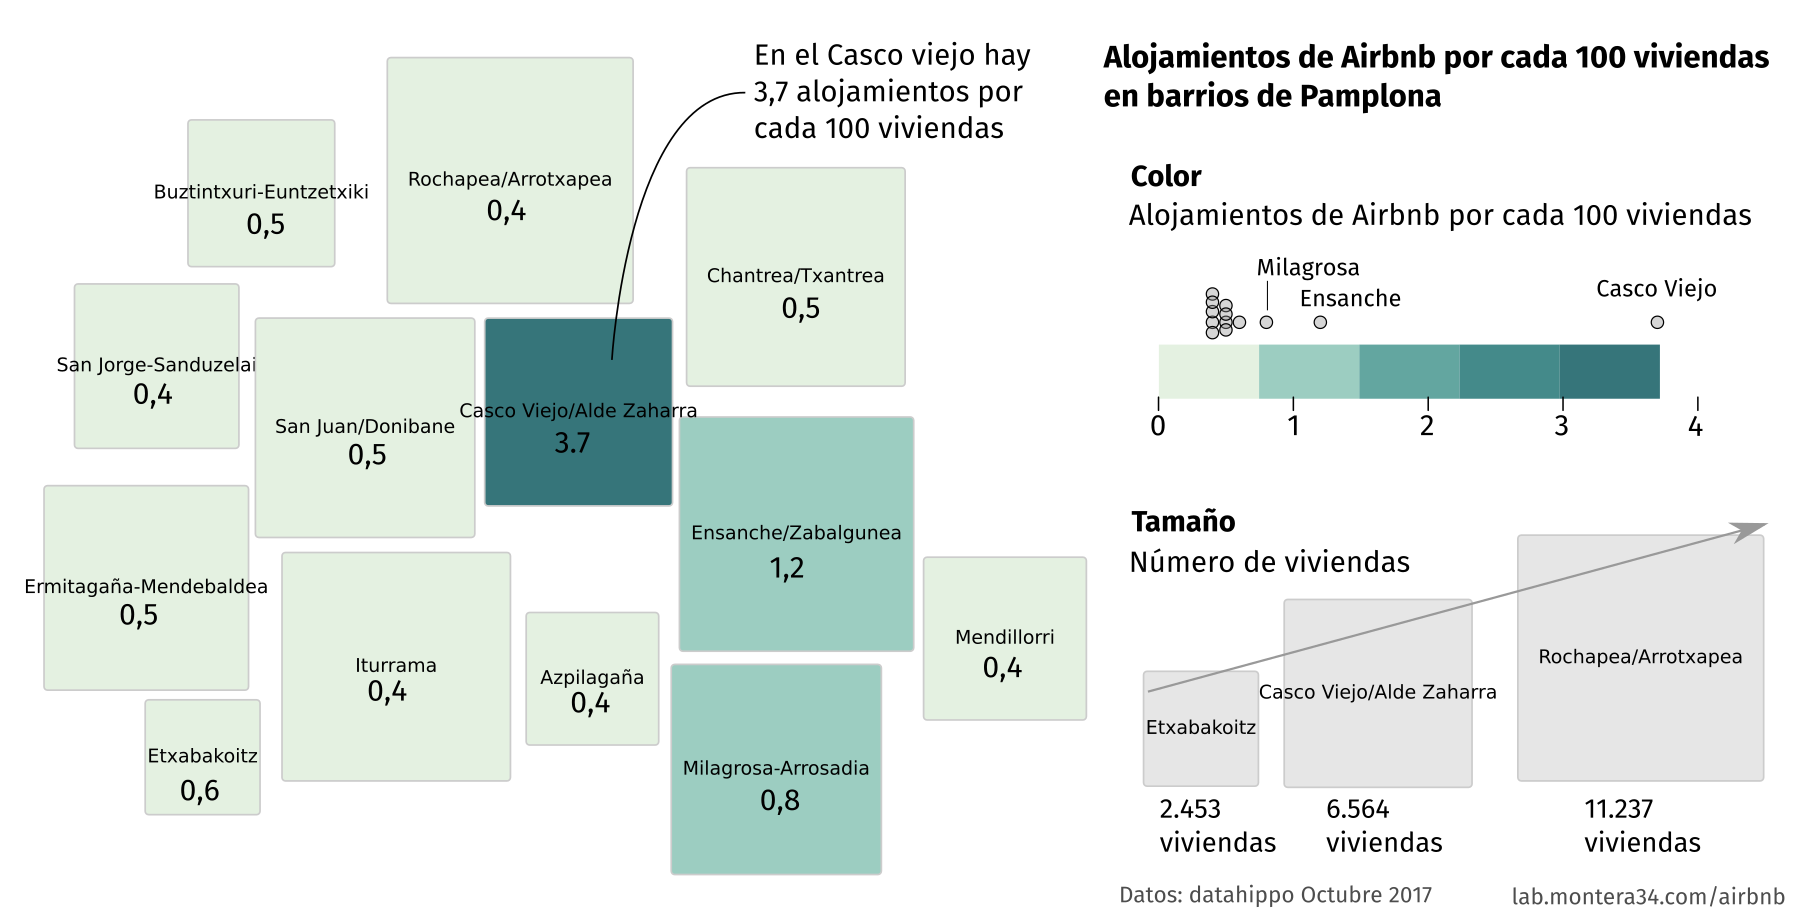 Distribución por barrios de alojamientos Airbnb por cada 100 viviendas en Pamplona-Iruña